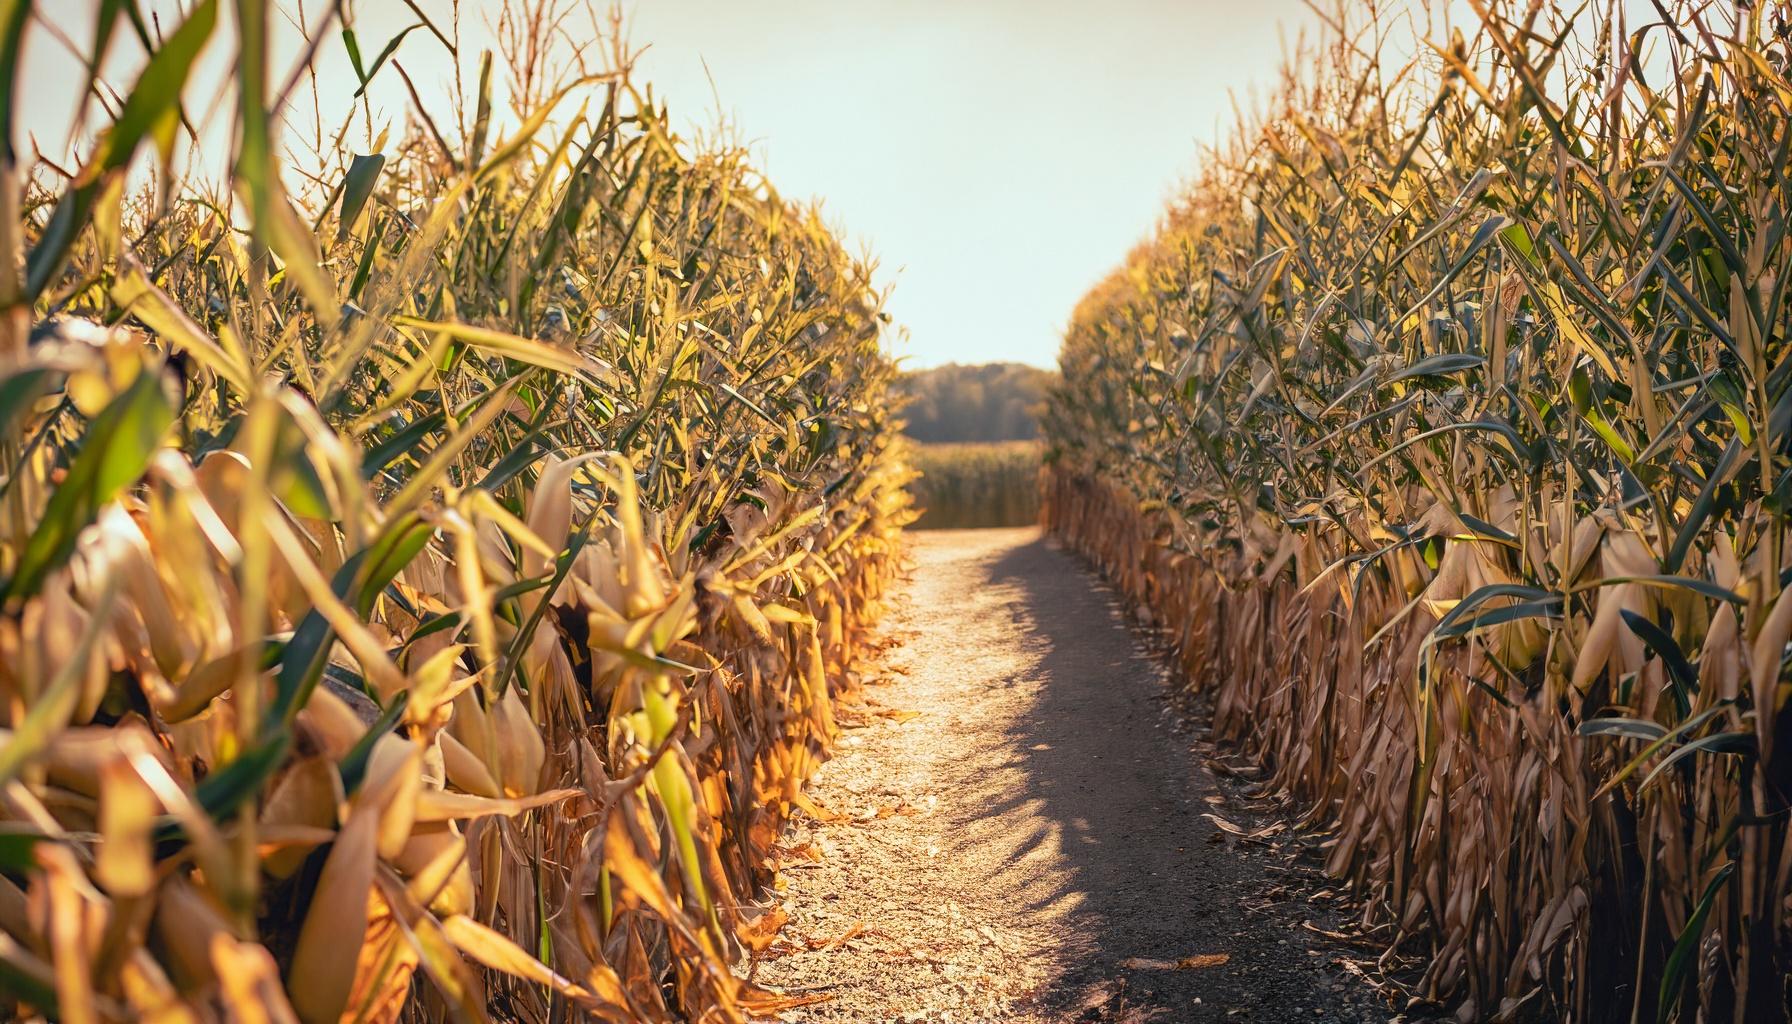 A path through a corn maze.